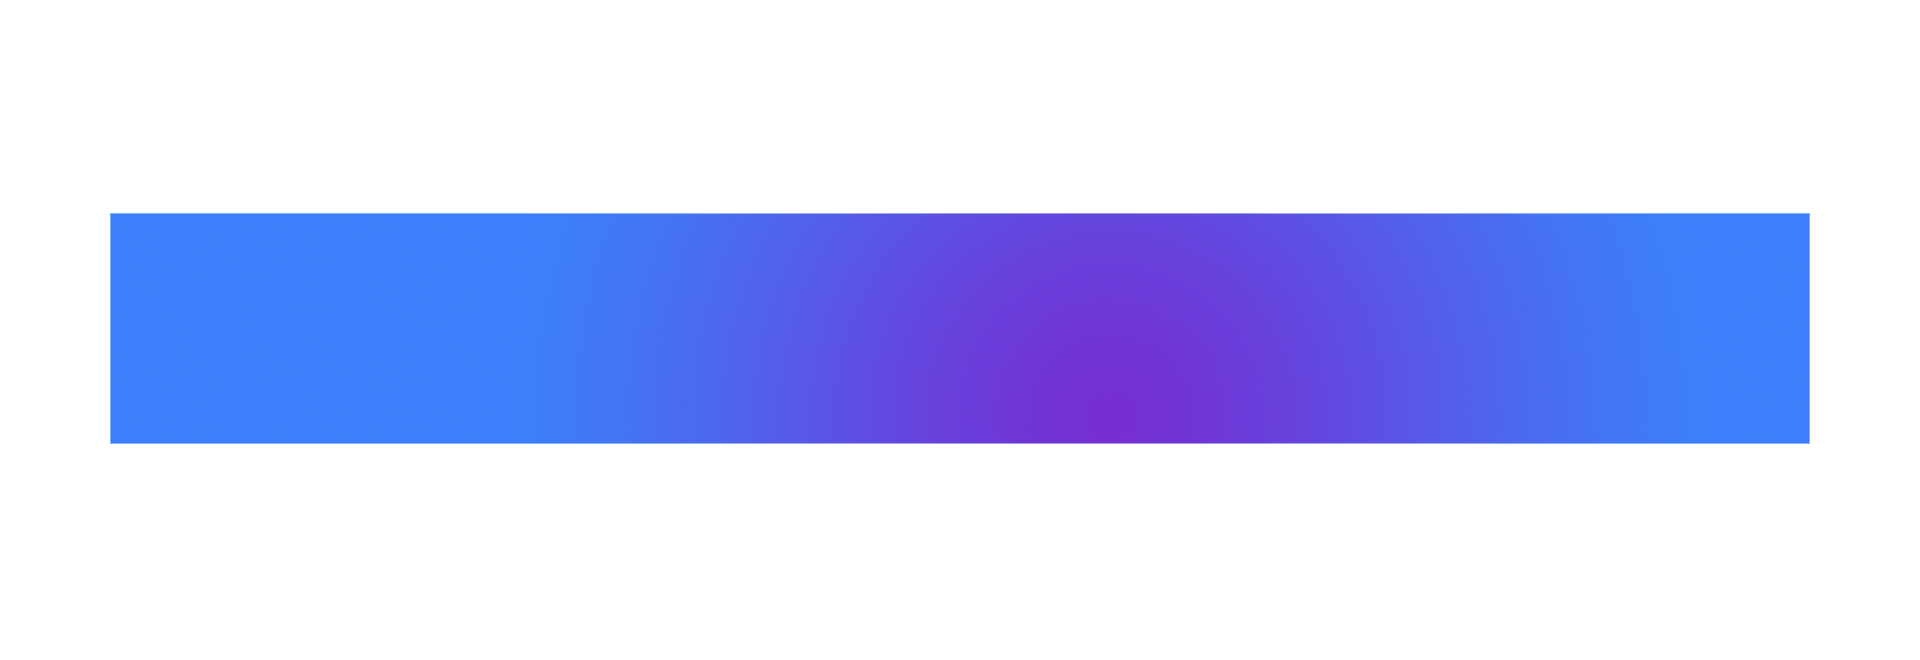 Blue Line PNG Image Transparent Background